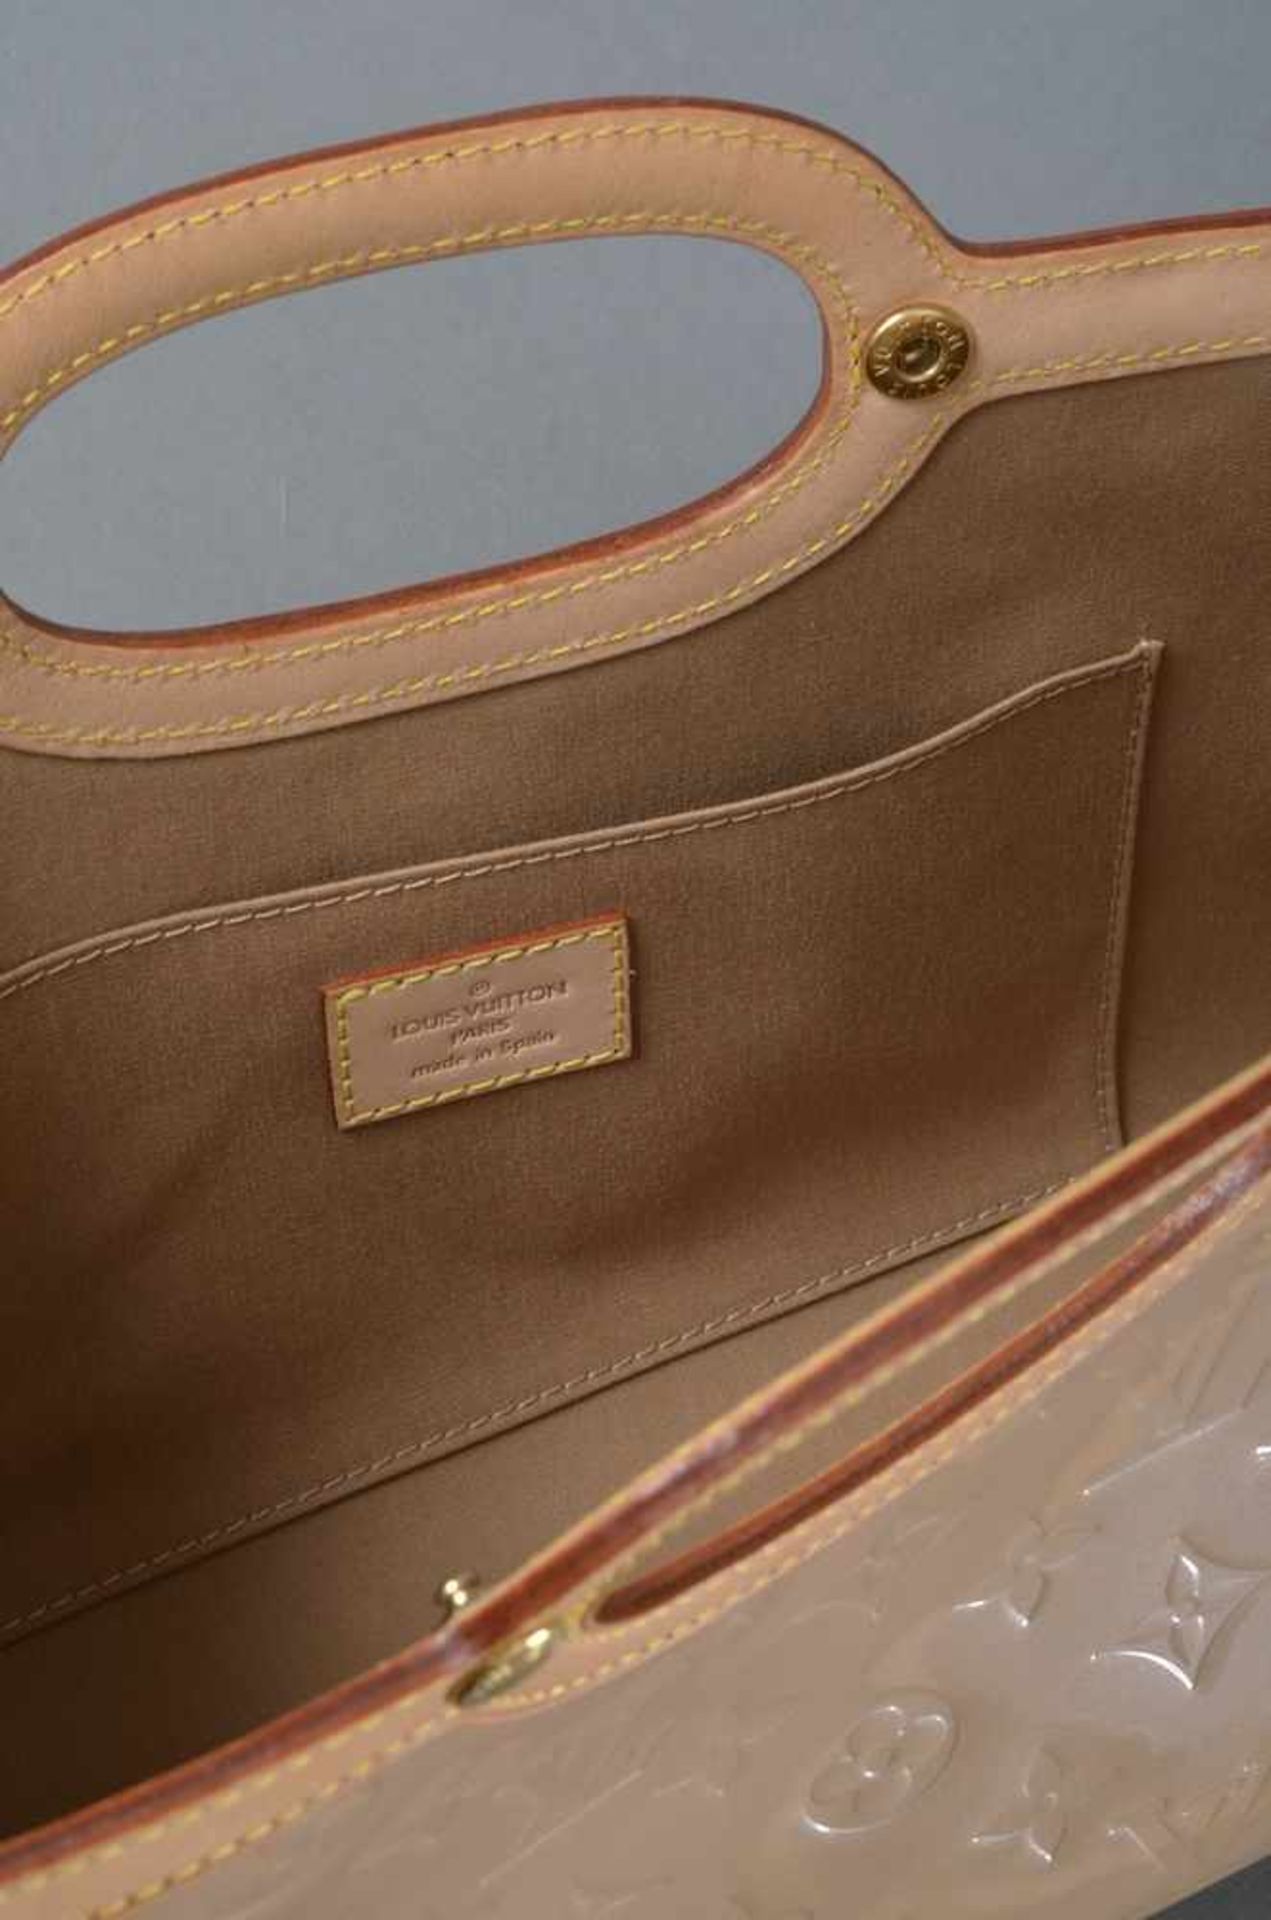 Louis Vuitton "Roxbury Drive Bag" Tasche mit Schulterriemen, Monogram Vernis, Noisette, Nr. LM 0055, - Bild 2 aus 2